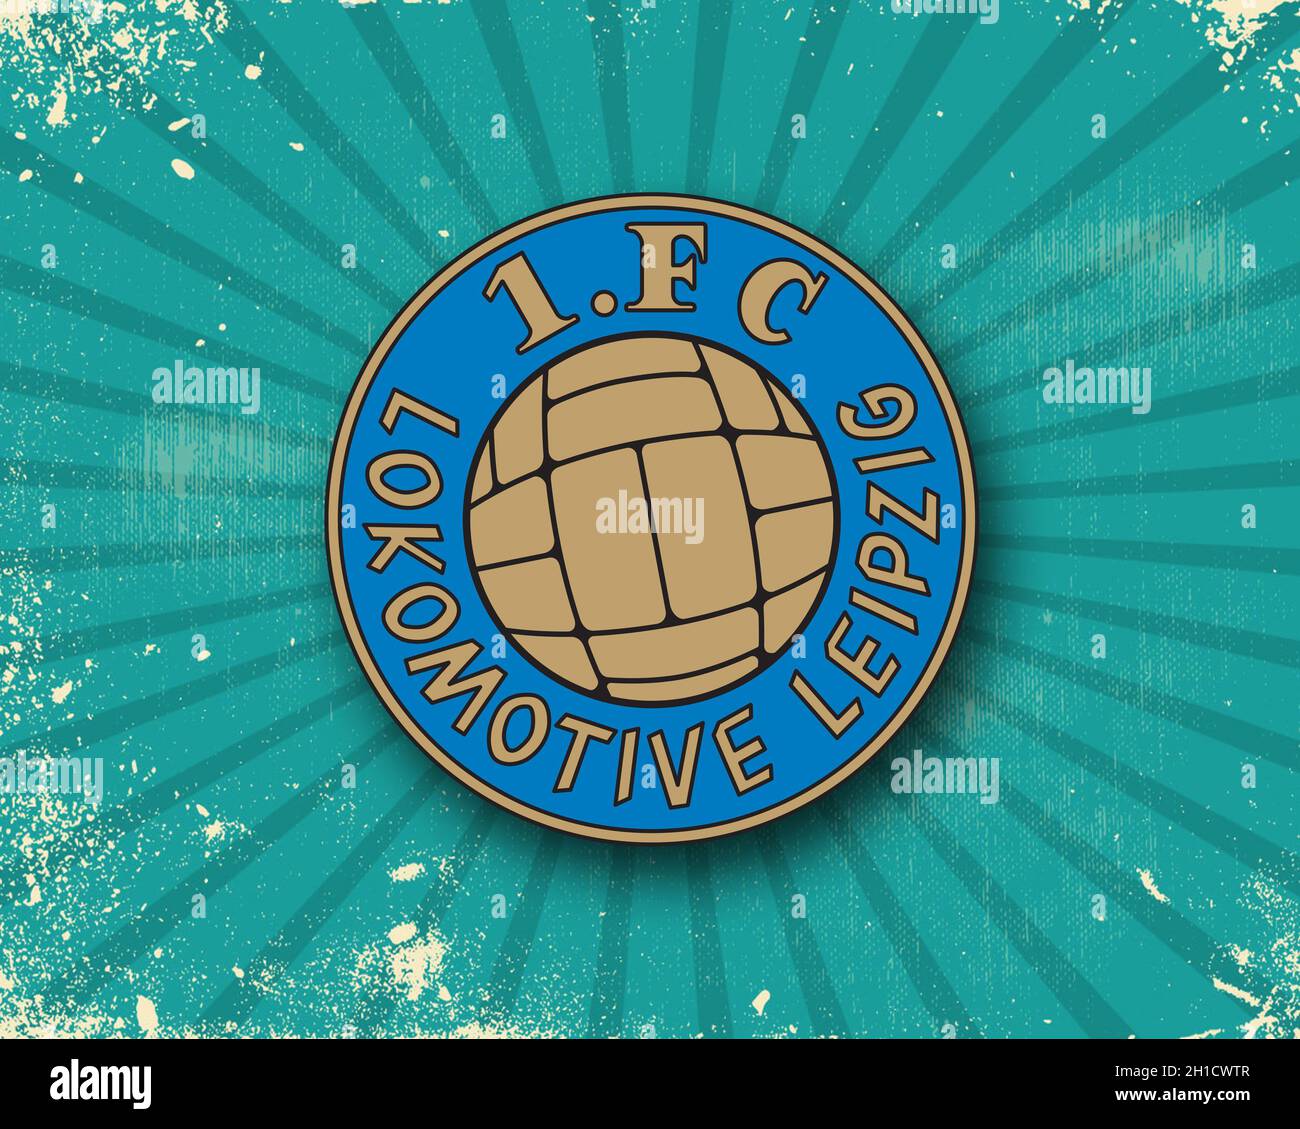 Wappen 1. FC Lokomotive Leipzig, ein Fußballverein aus Deutschland  Stockfotografie - Alamy